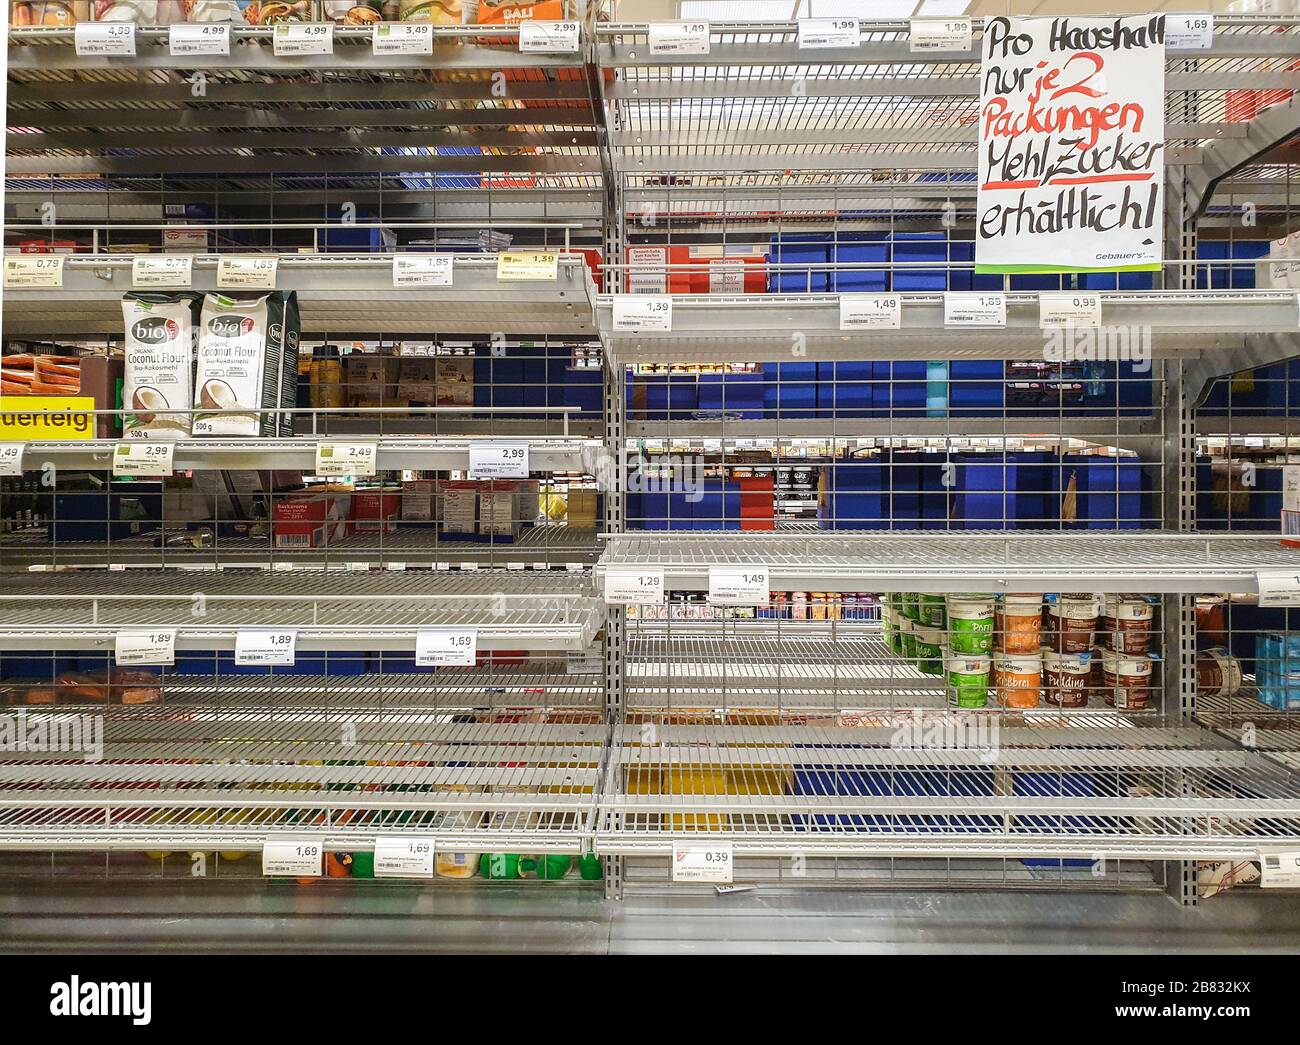 GEISLINGEN AN DER STEIGE, GERMANIA - 16 MARZO 2020: Supermercato con scaffali vuoti che restringono la farina e lo zucchero ('solo due confezioni di farina, zucchero') Foto Stock